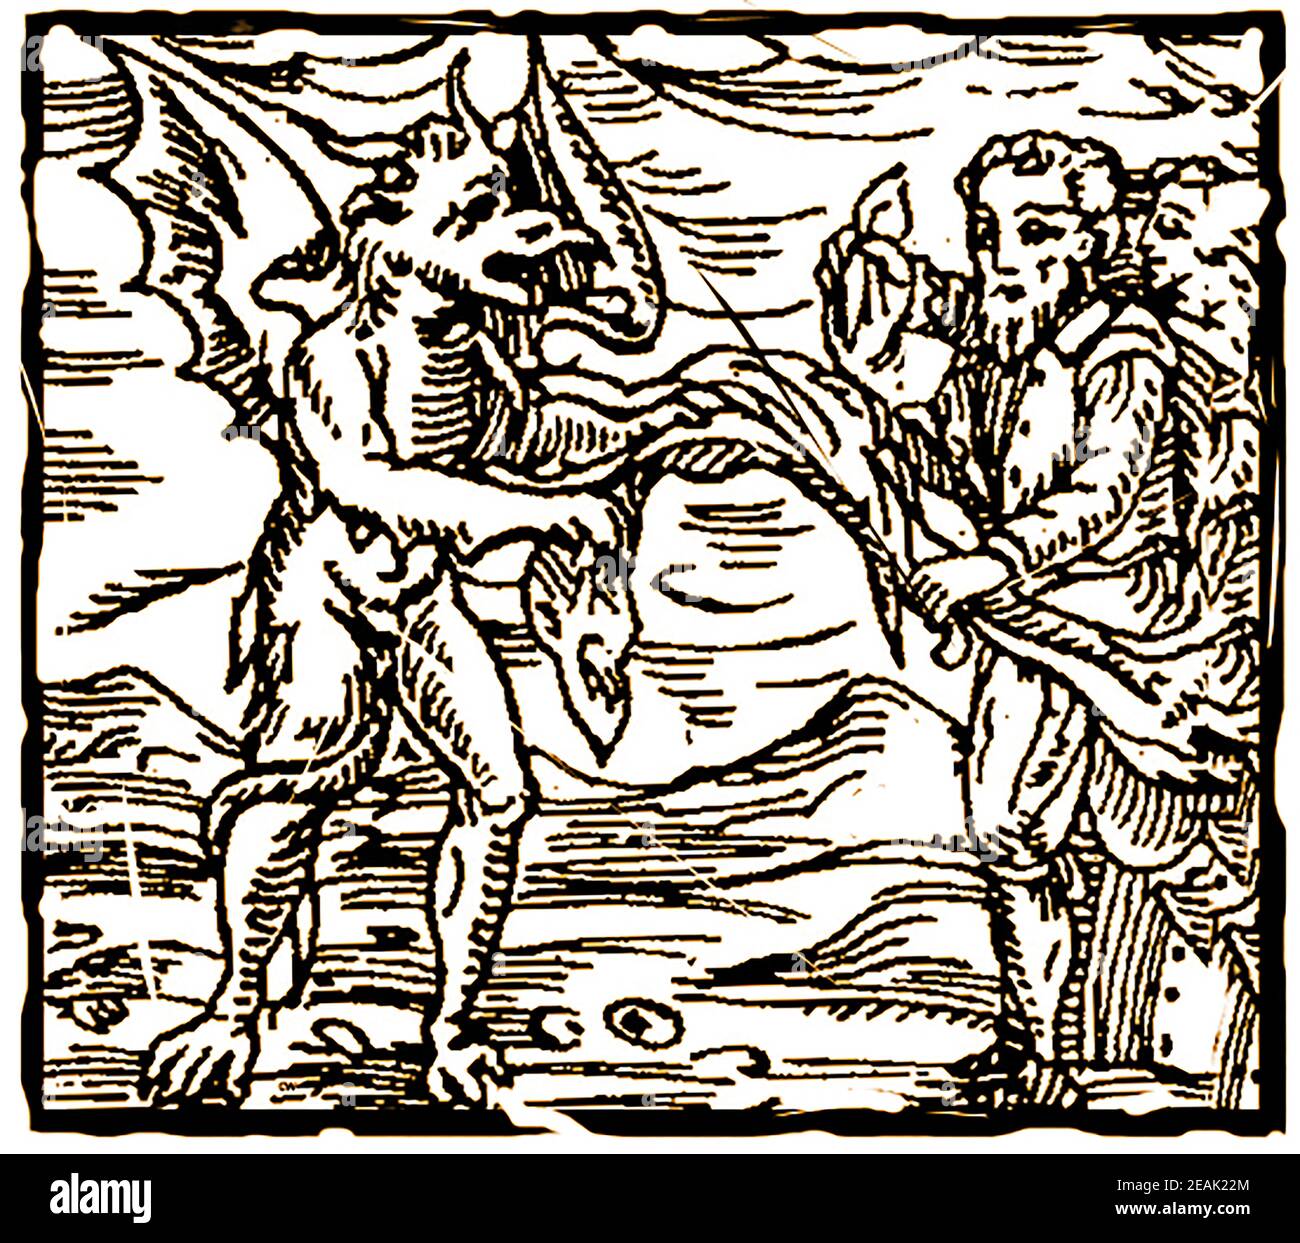 La Clé de l'Enfer, ou de la magie noire au XVIIIe siècle